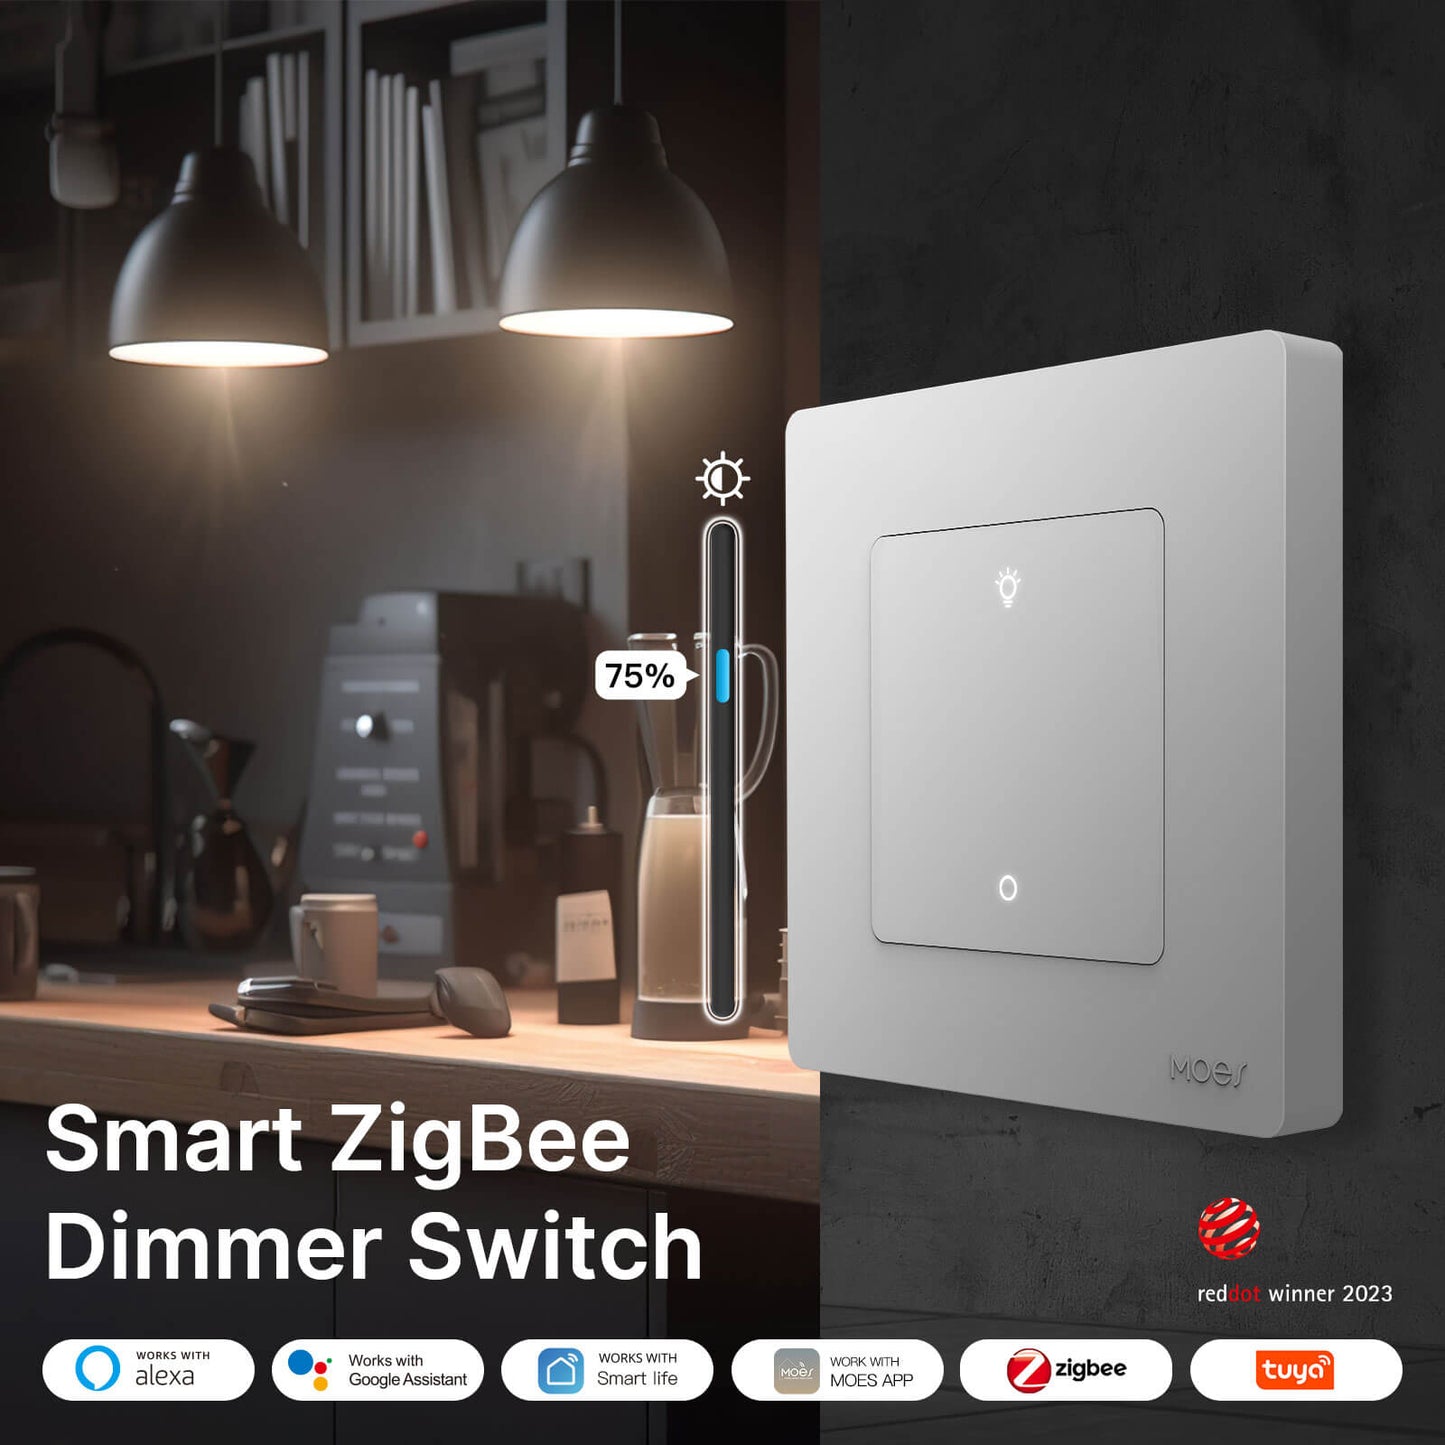 smart zigbee dimmer switch - MOES